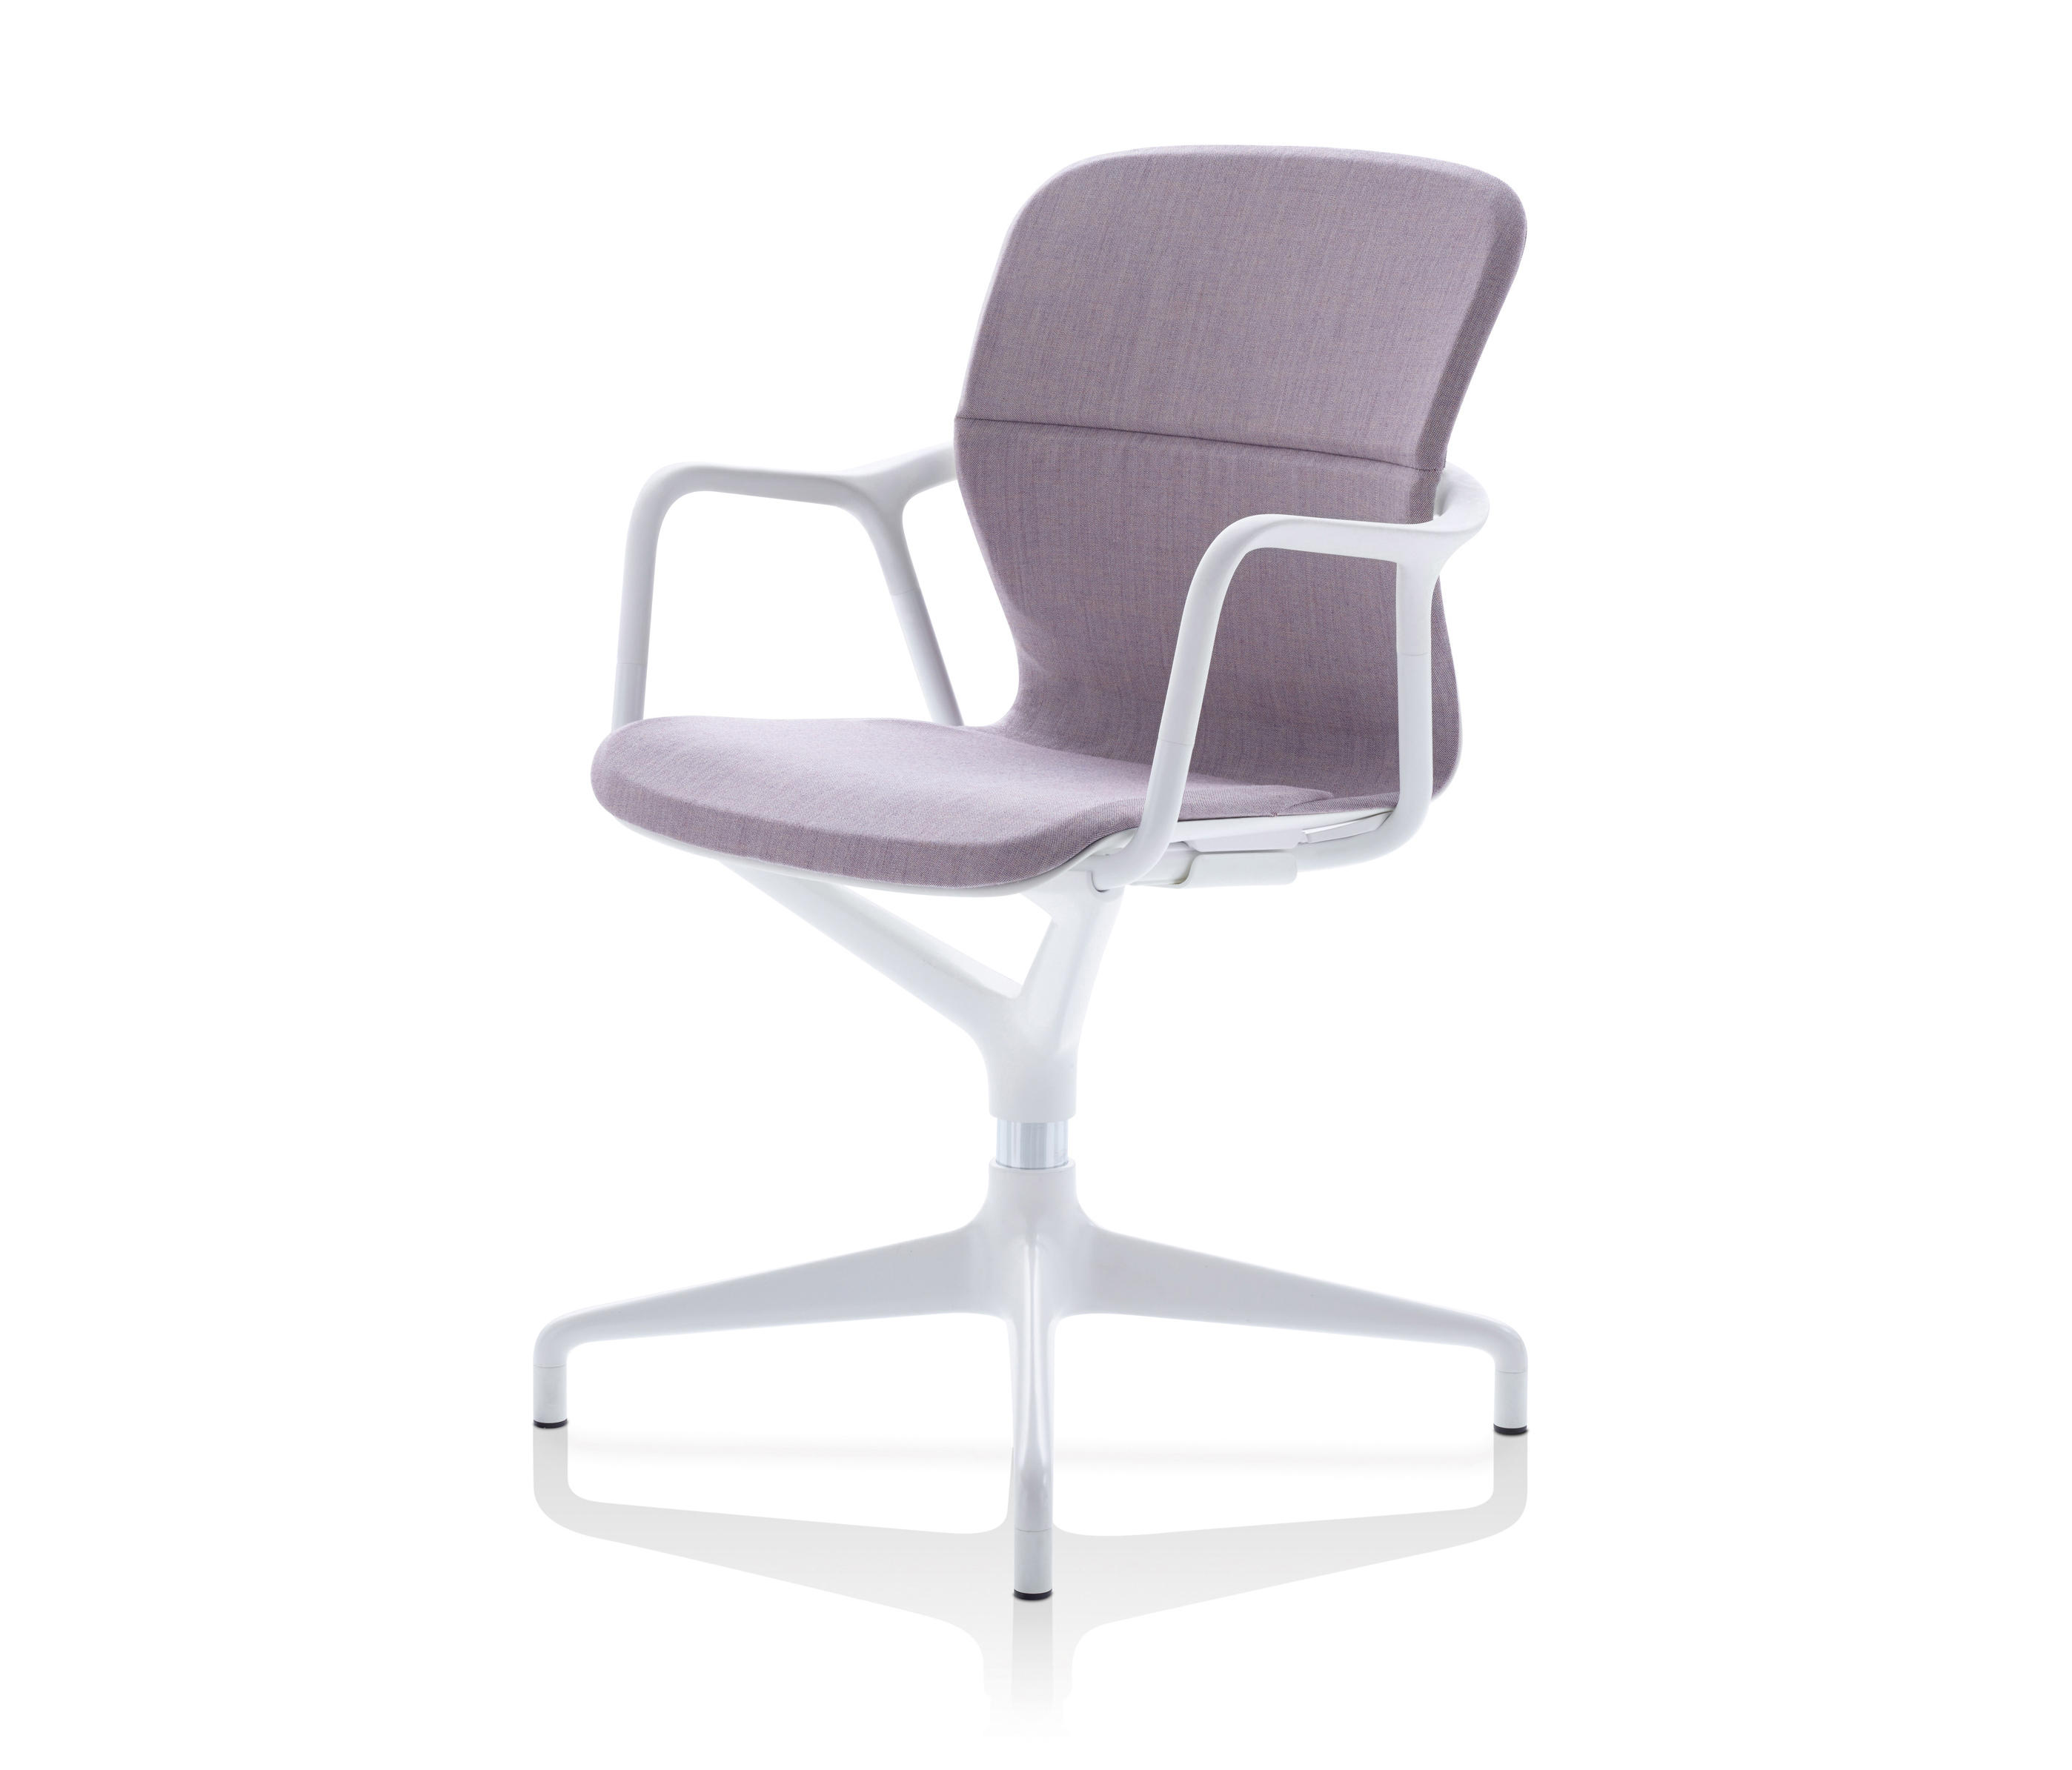 Regelmæssighed afstand Besætte Keyn Chair Group & designer furniture | Architonic